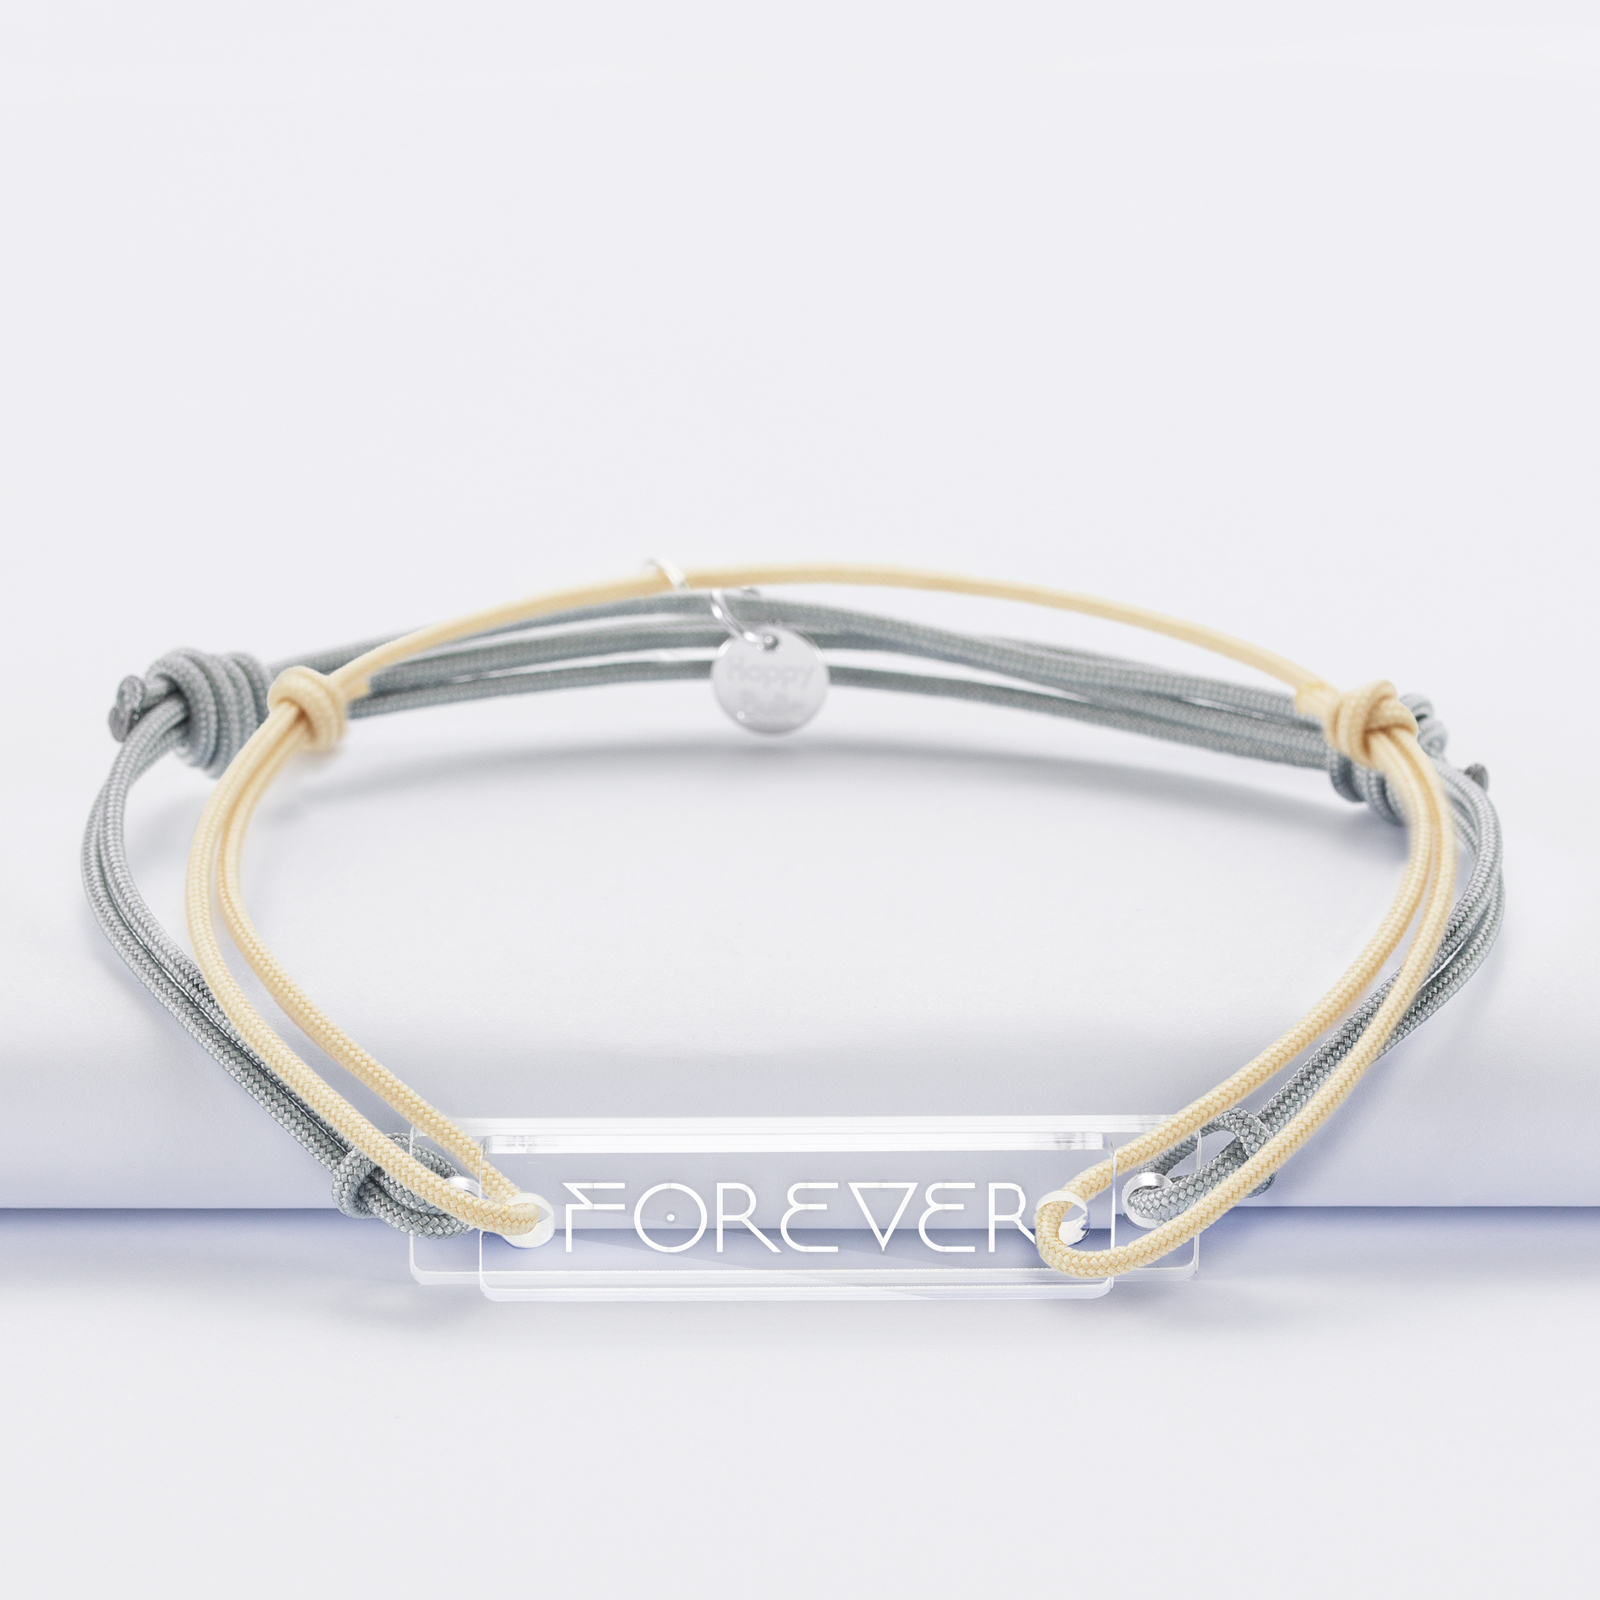 Forever 21 gold chain charm bracelet FUBU new | eBay